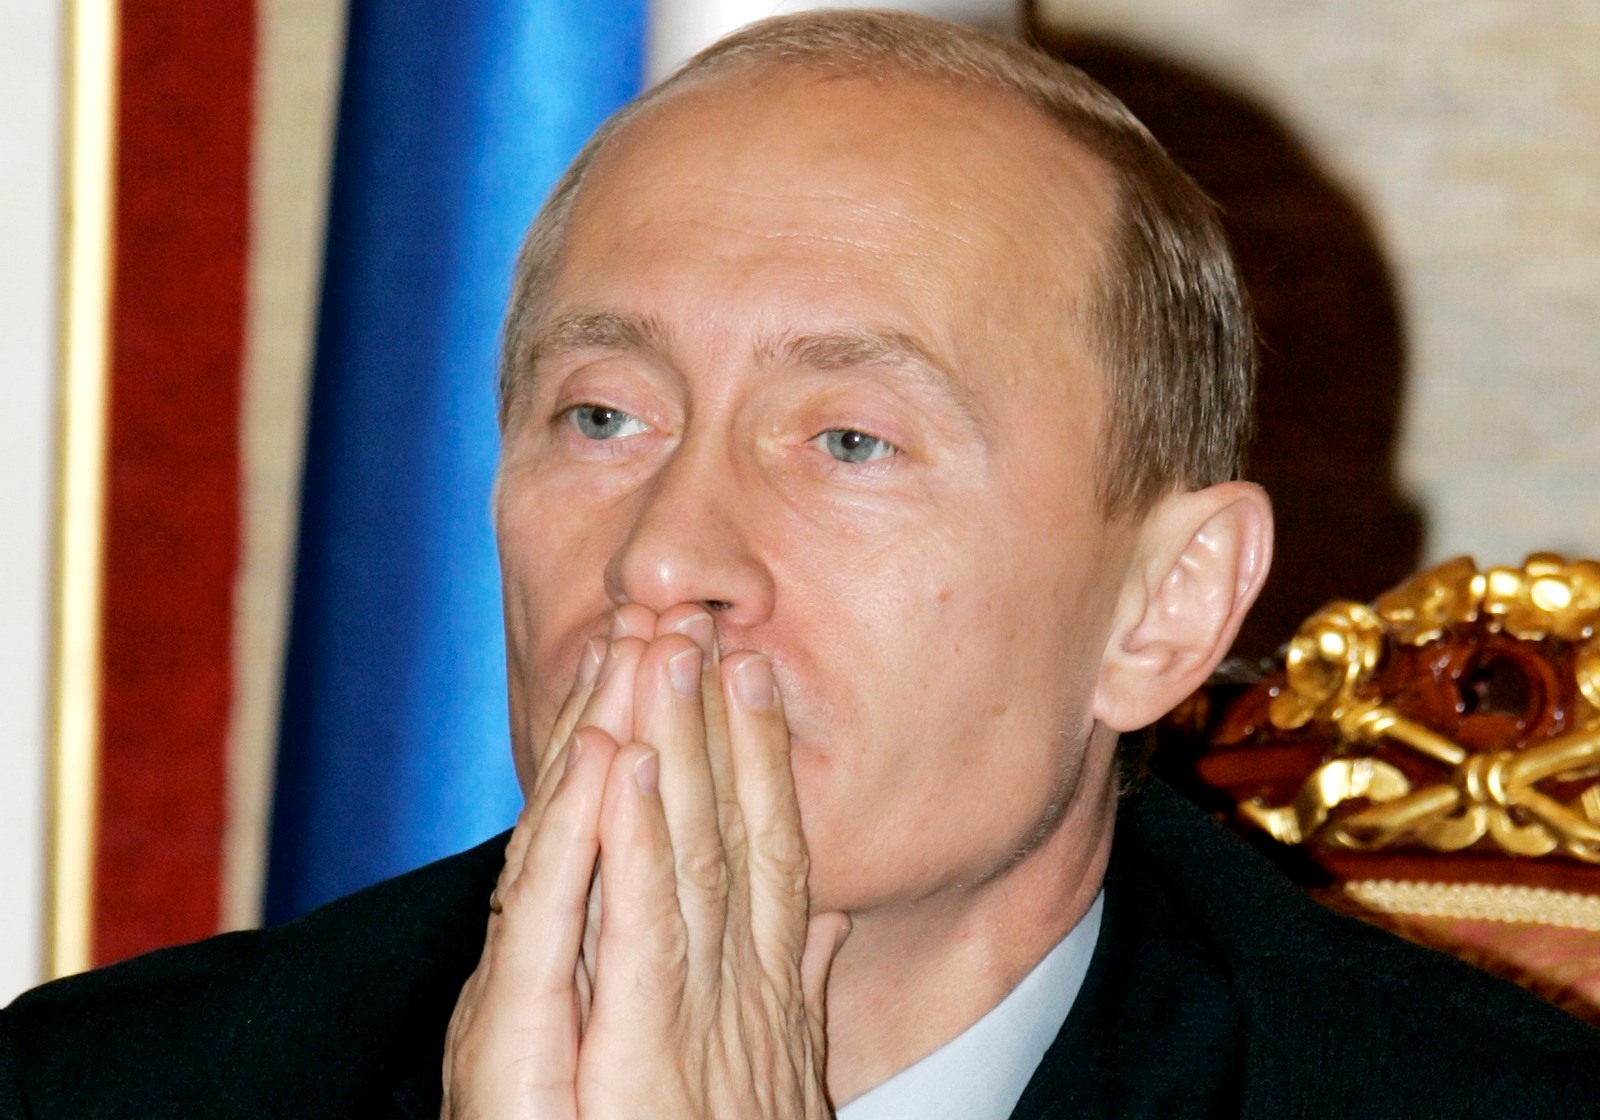 Βλαντίμιρ Πούτιν: "Η ρωσοφοβία στο Ντονμπάς είναι ένα πρώτο βήμα προς τη γενοκτονία"